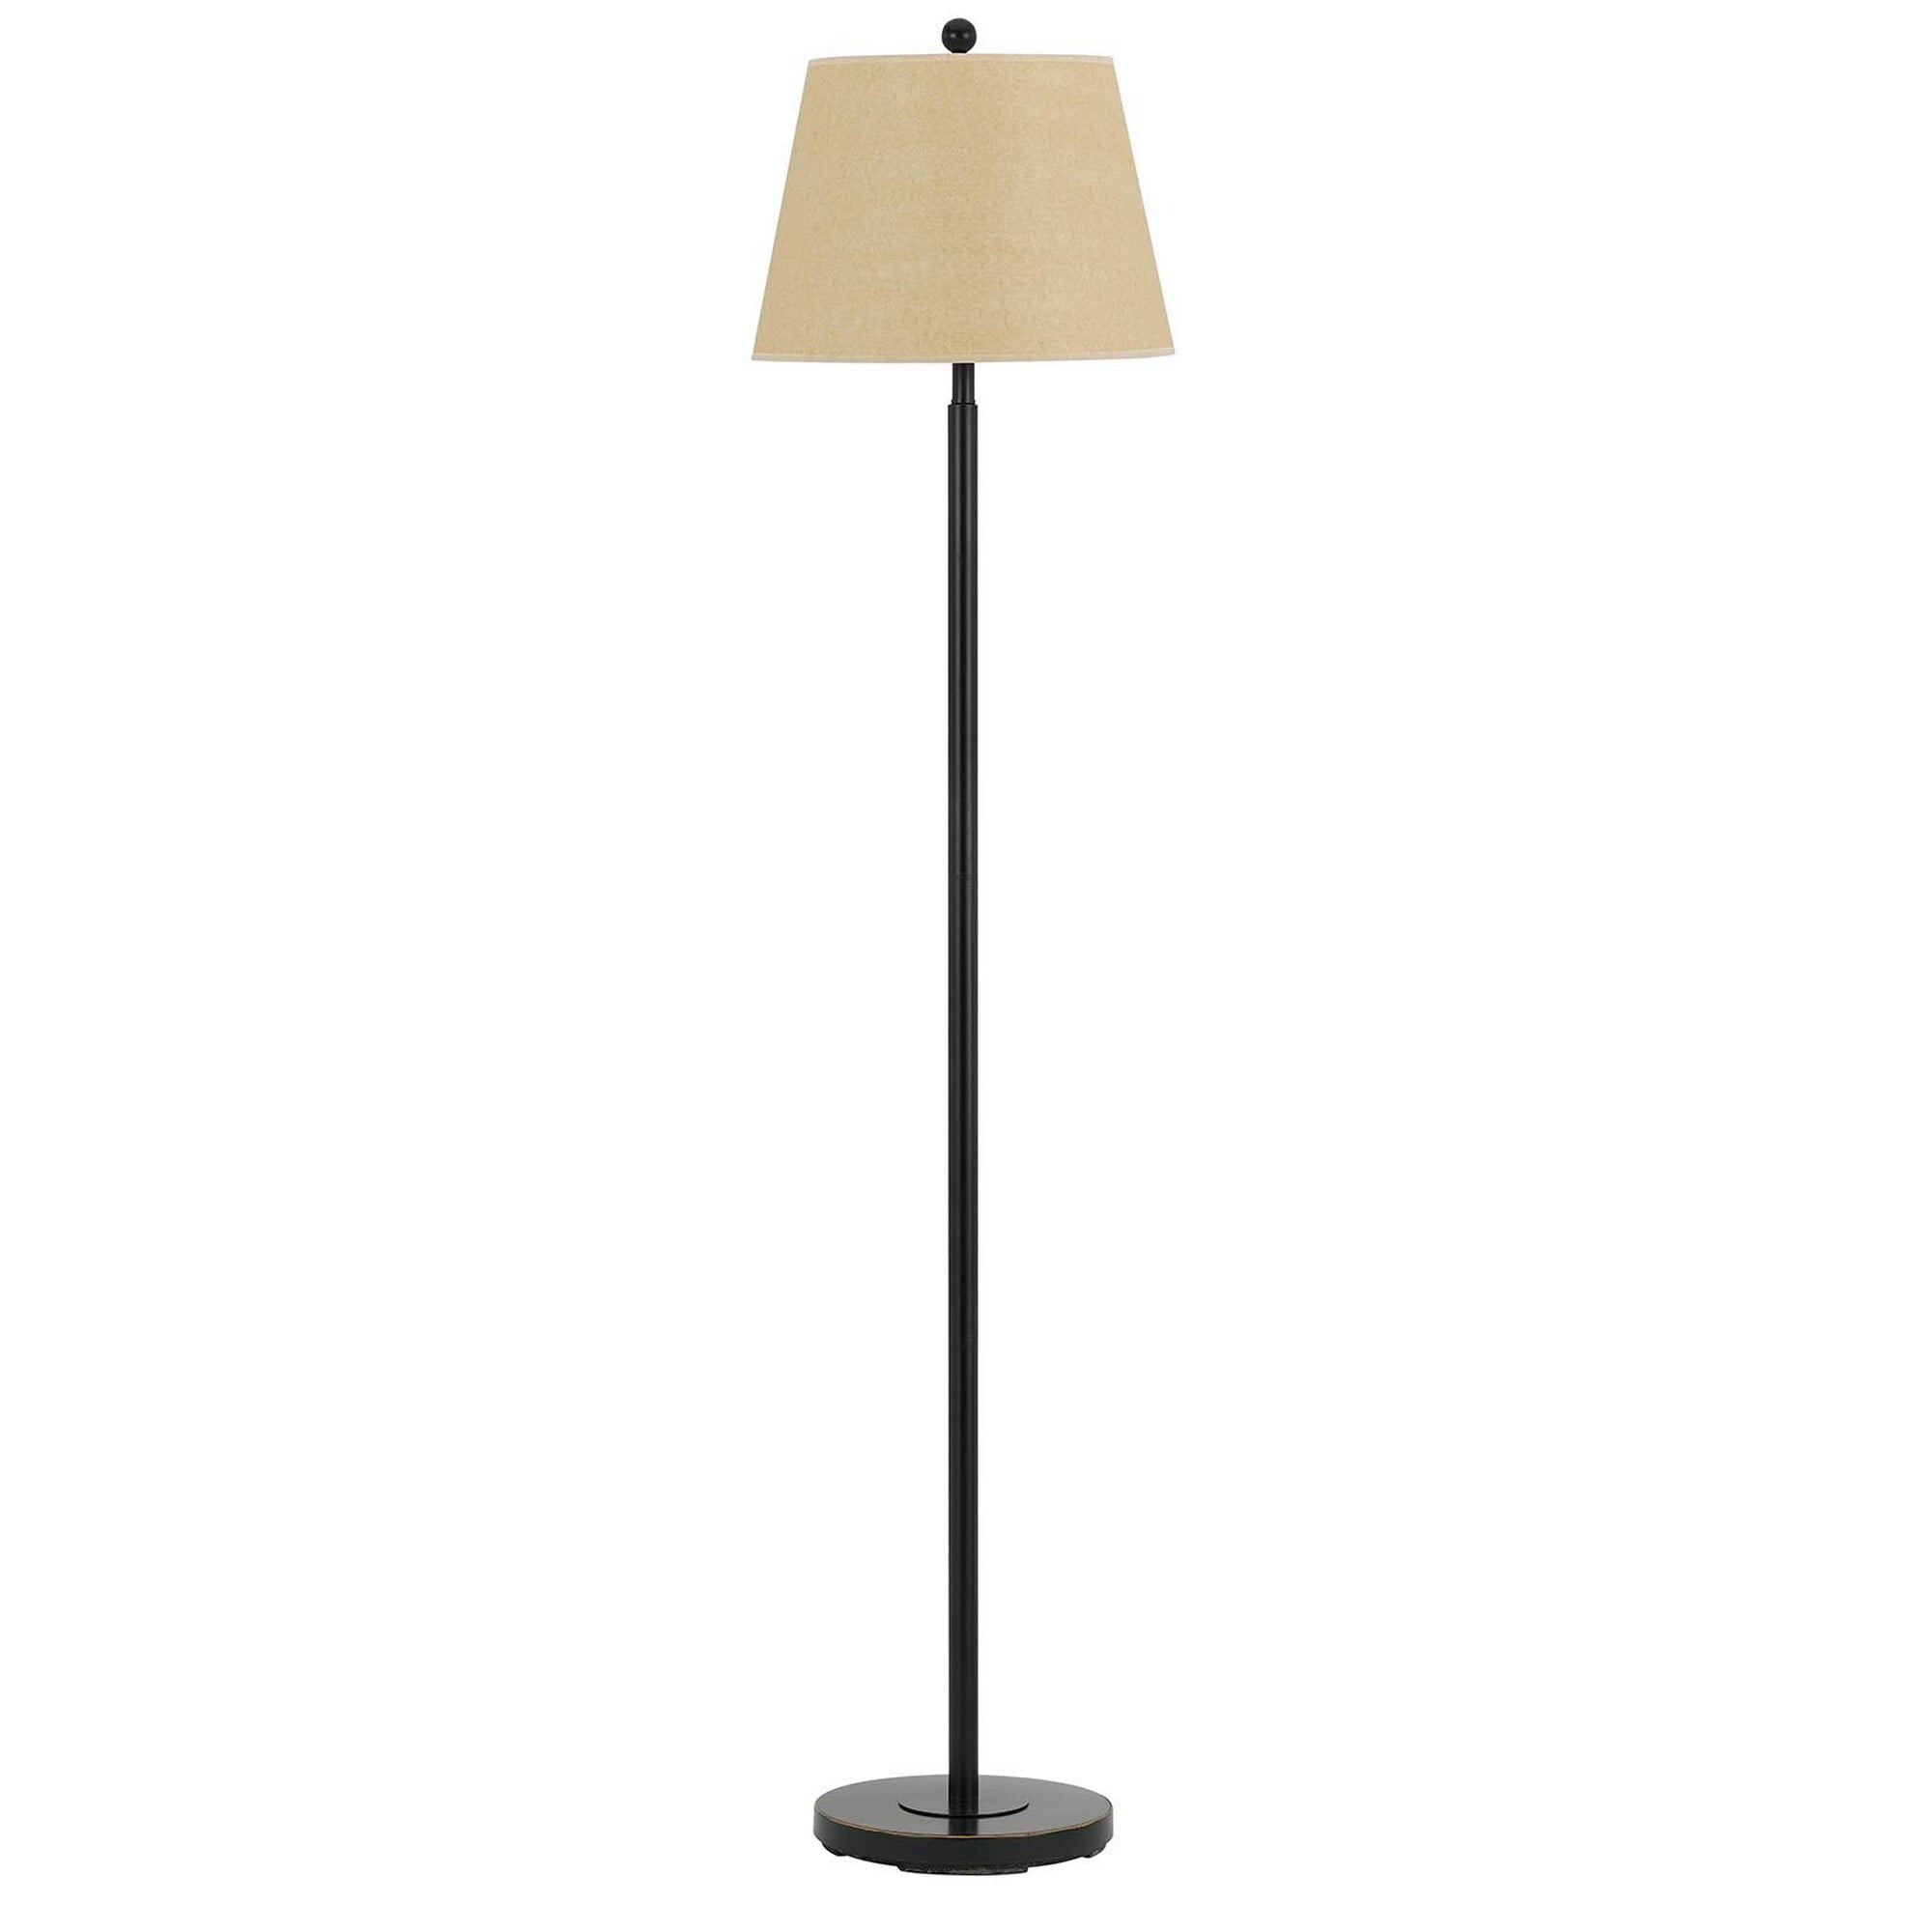 Picture of Benjara BM225109 Metal Round 3 Way Floor Lamp with Spider Type Shade, Dark Bronze